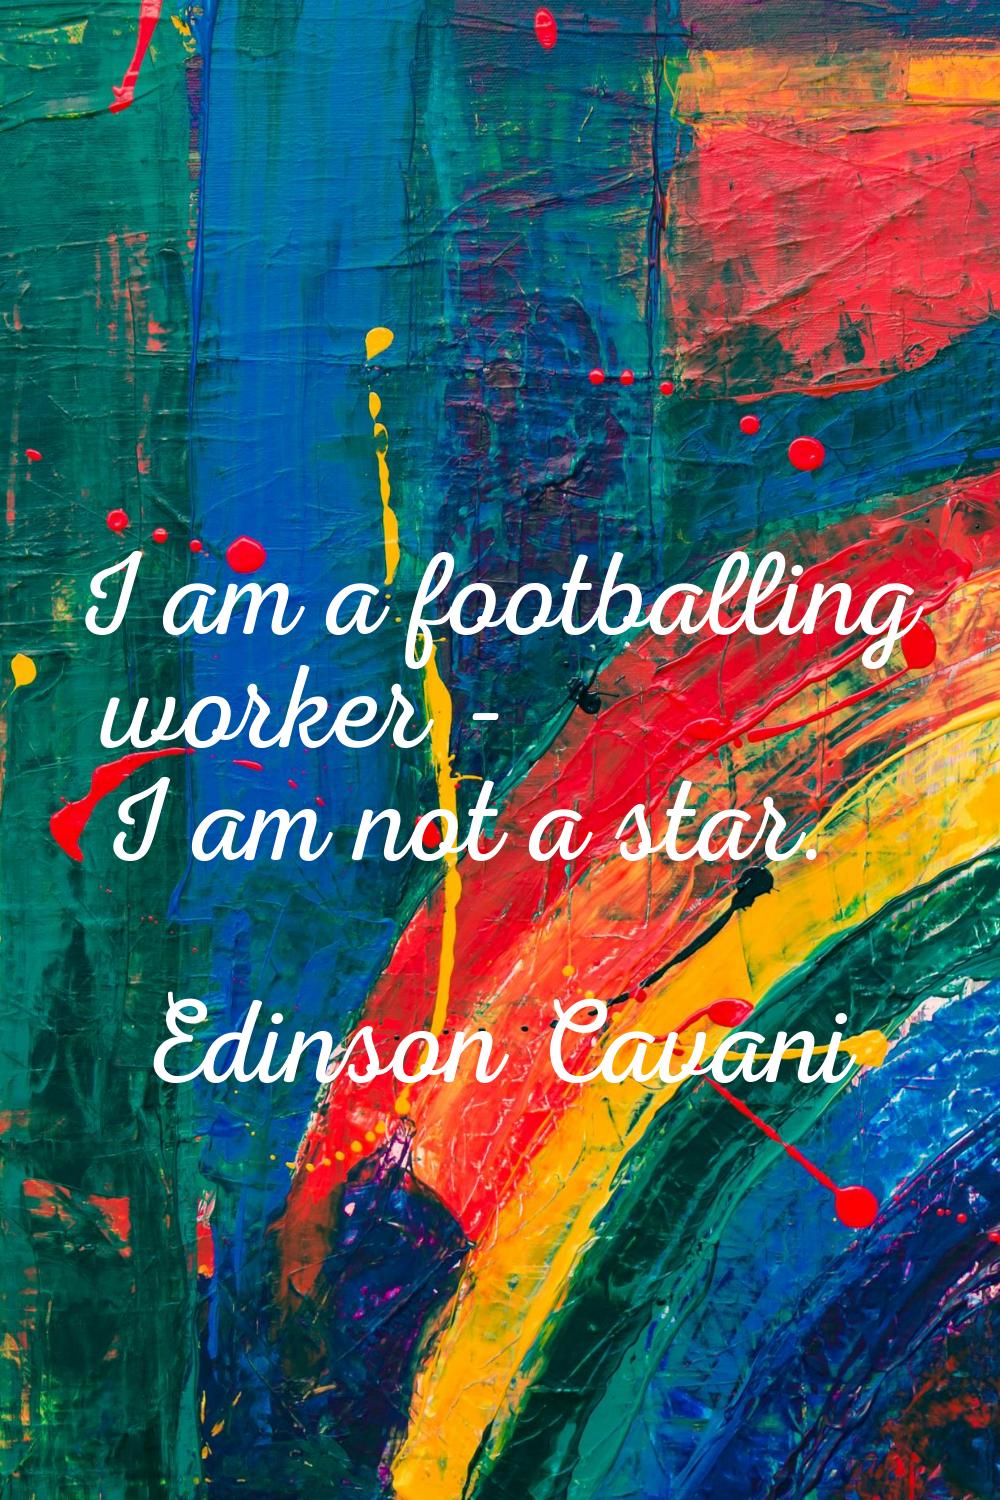 I am a footballing worker - I am not a star.